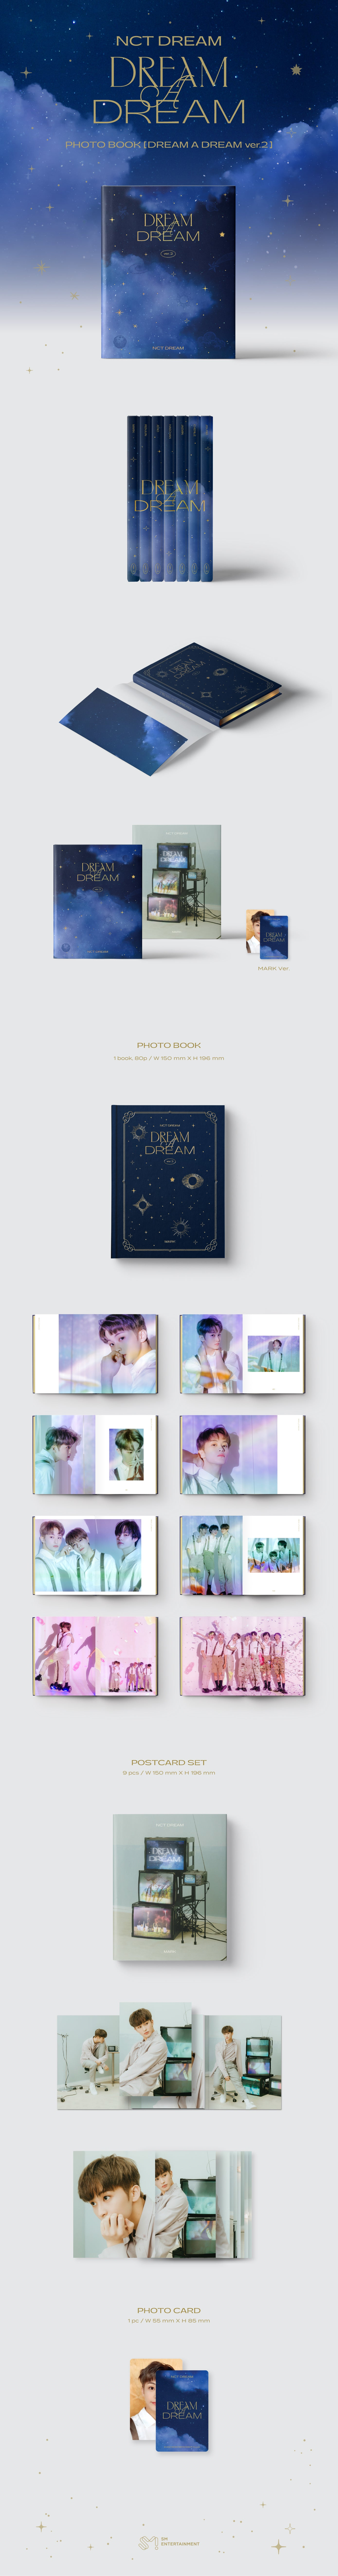 NCT Dream - DREAM A DREAM Ver.2 (Photobook)